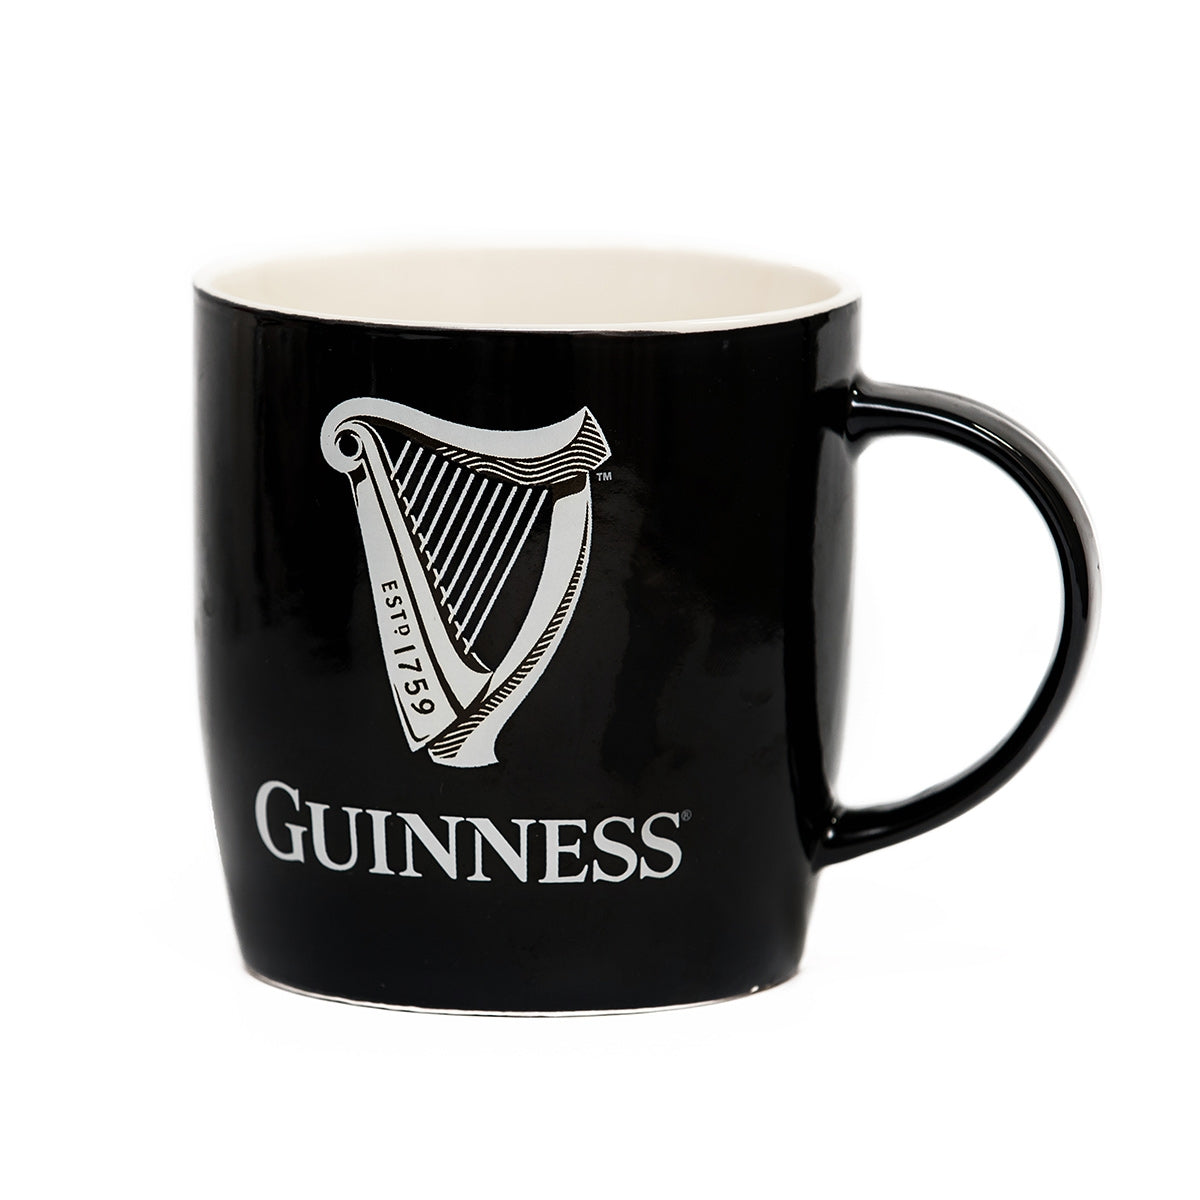 Guinness Black Mug with White Harp Logo